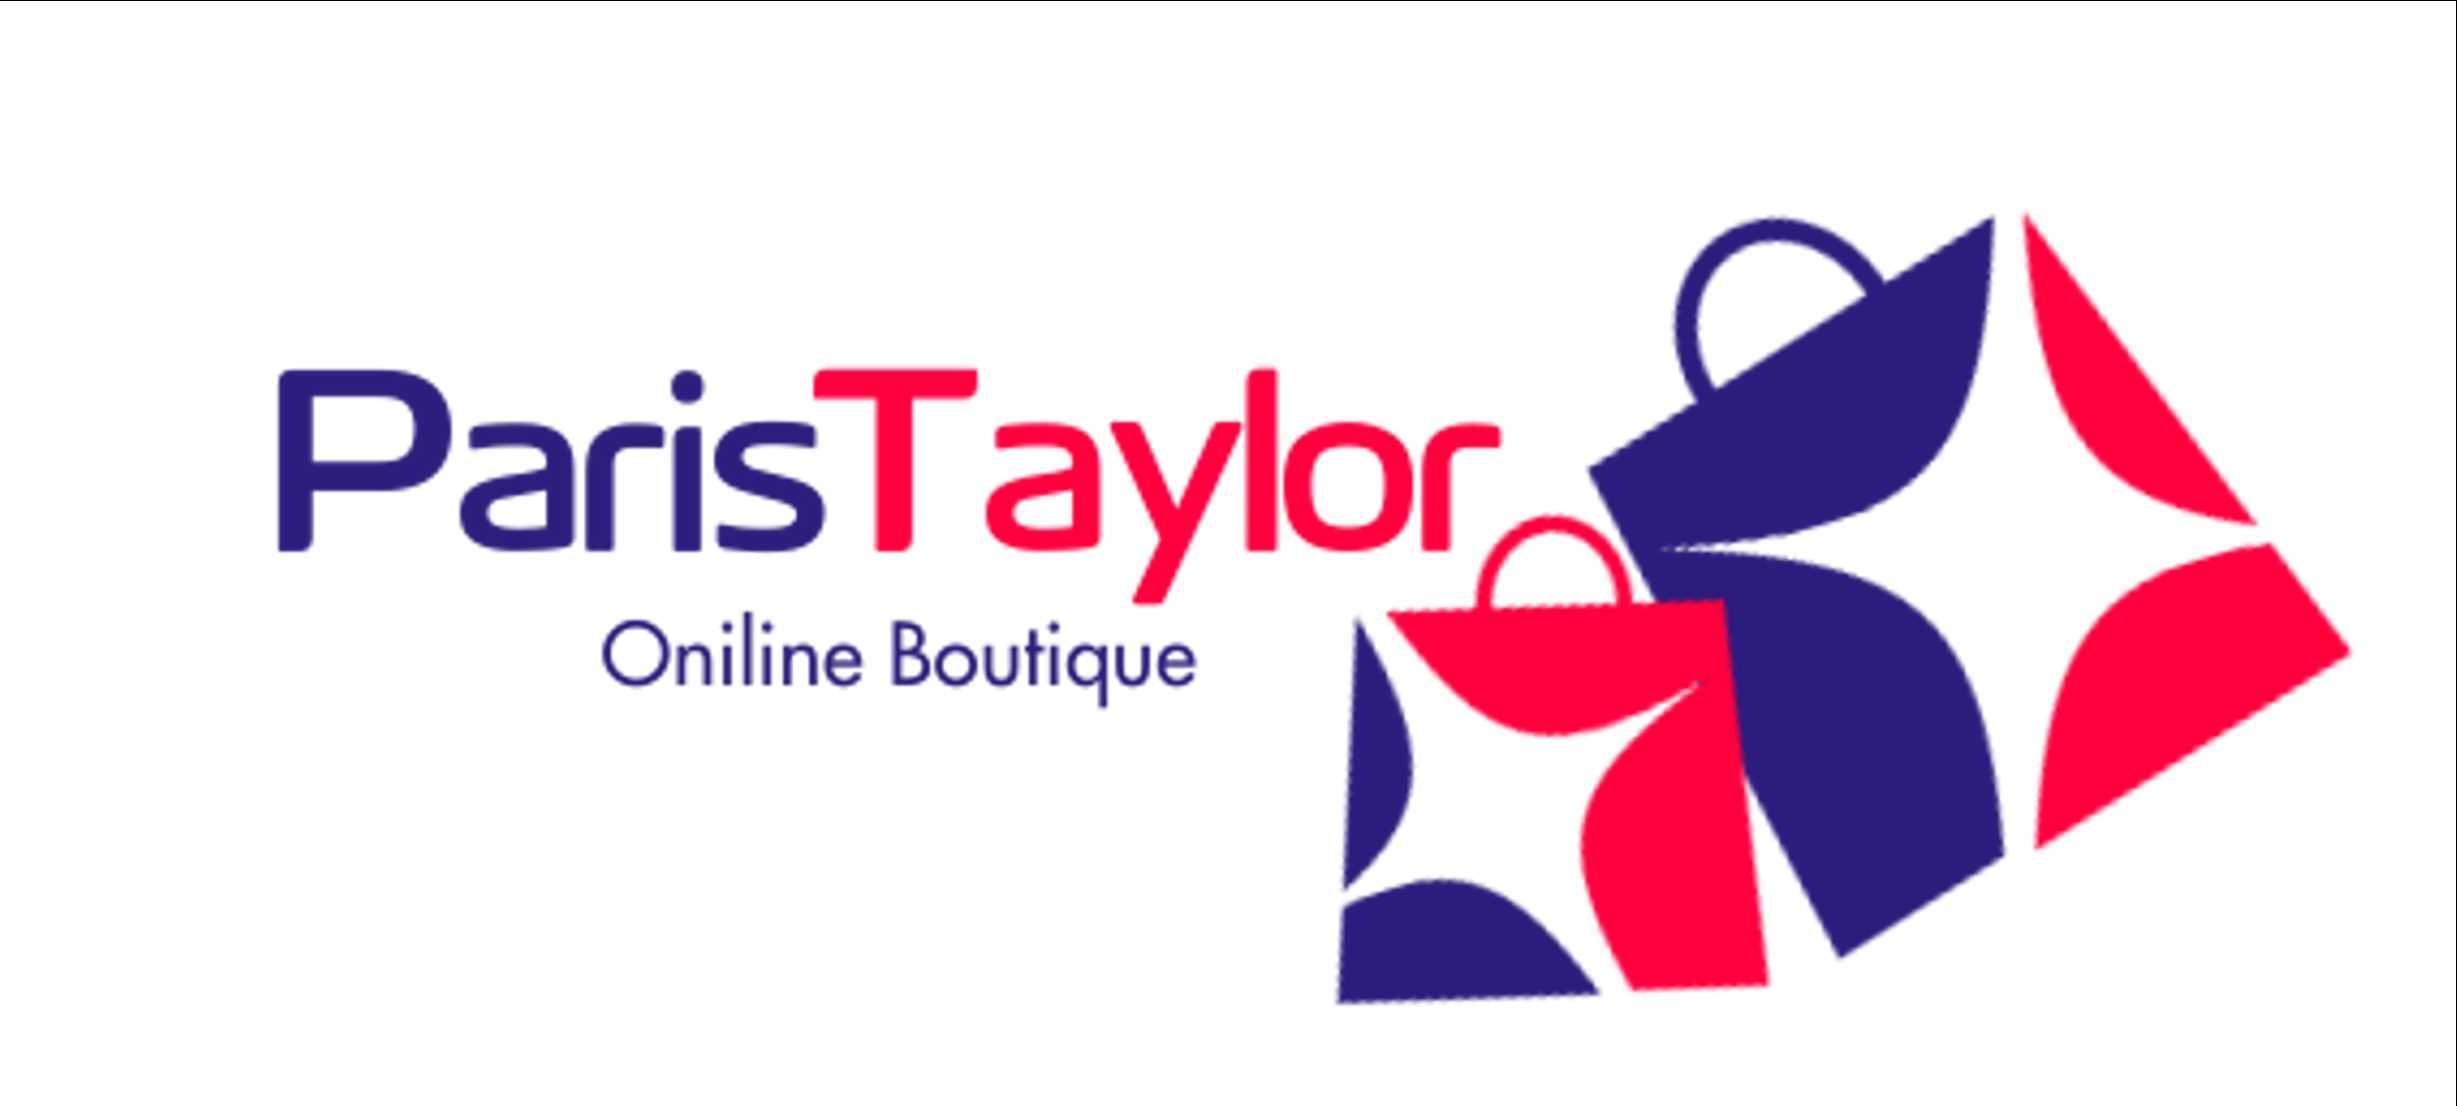 ParisTaylor Boutique